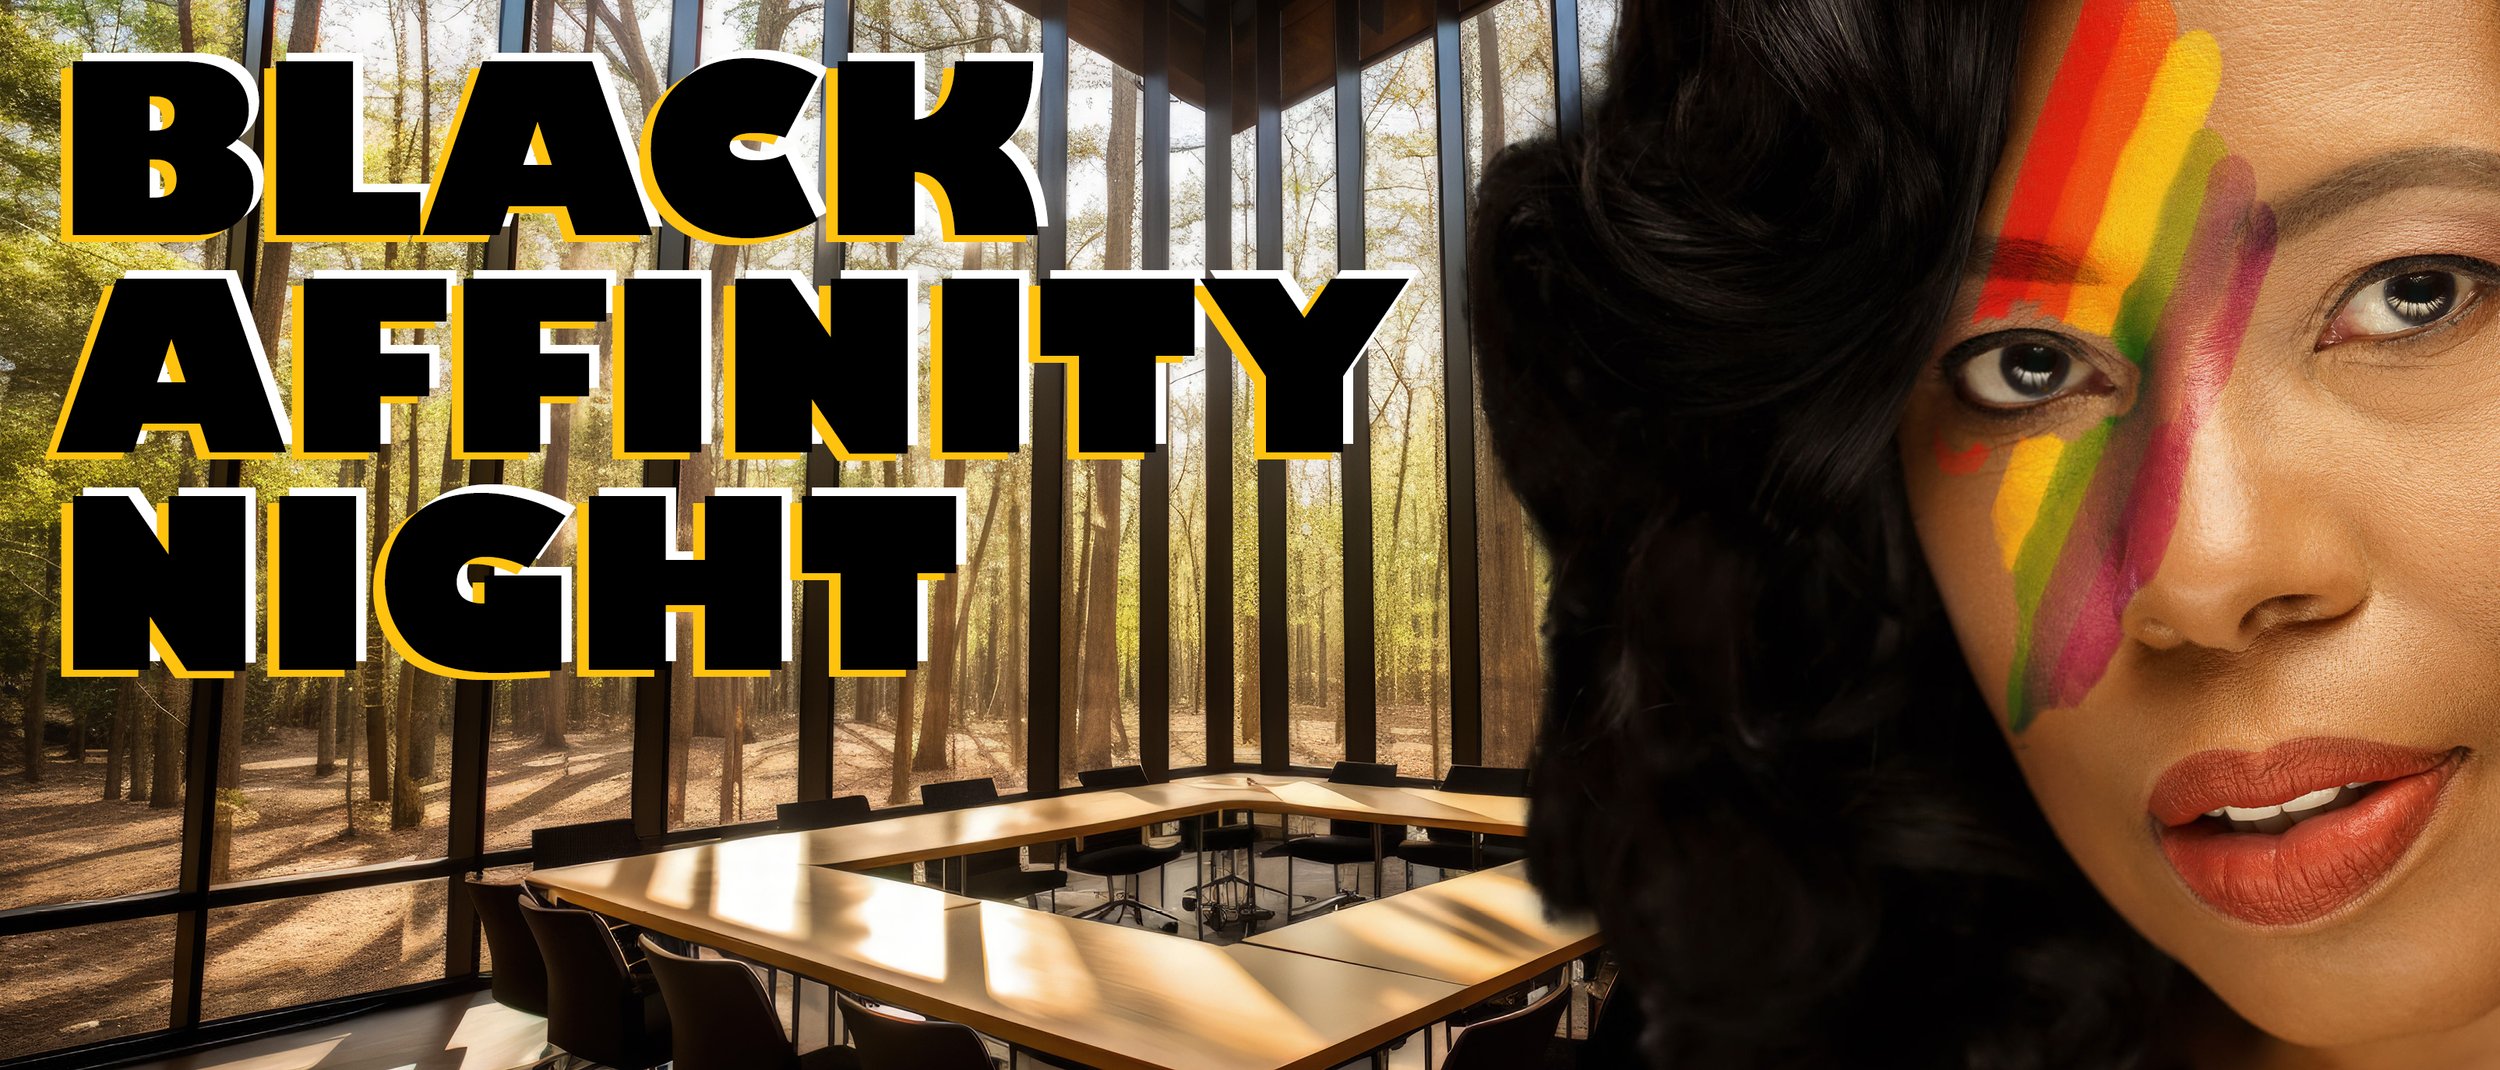 Website Headers_Black Affinity Night.jpg